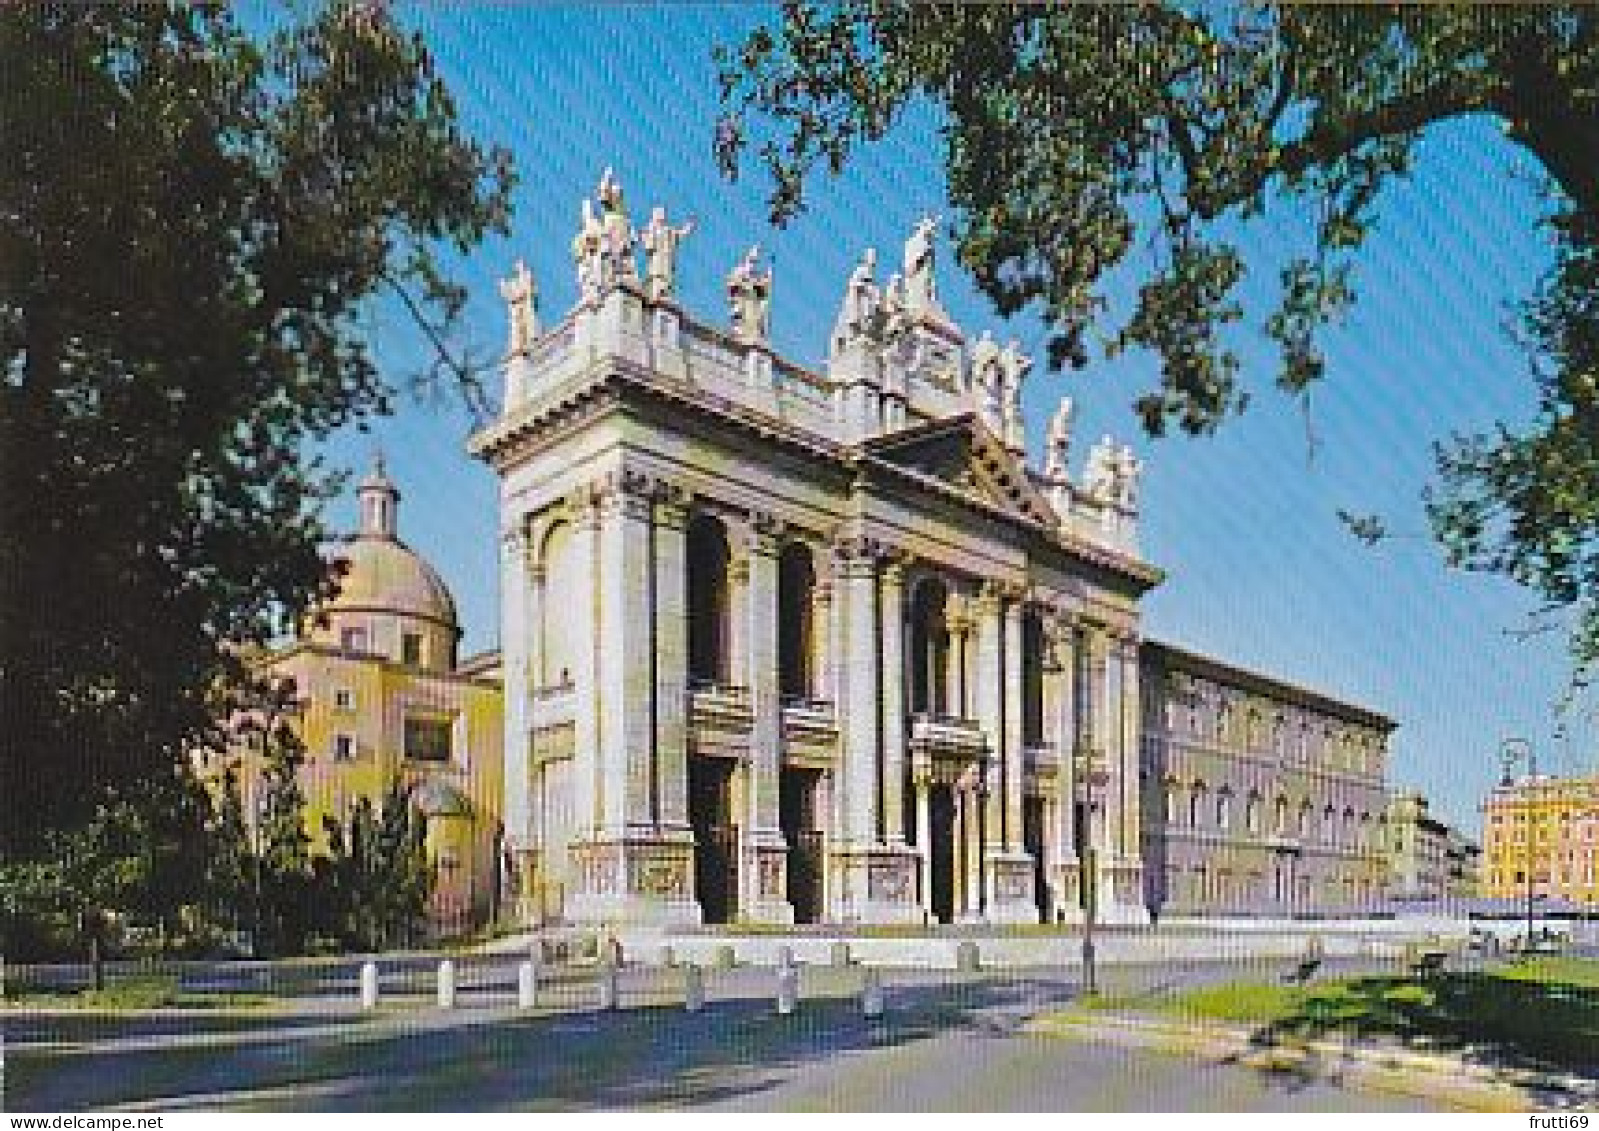 AK 216867 ITALY - Roma - Basilica S. Giovanni In Laterano - Eglises